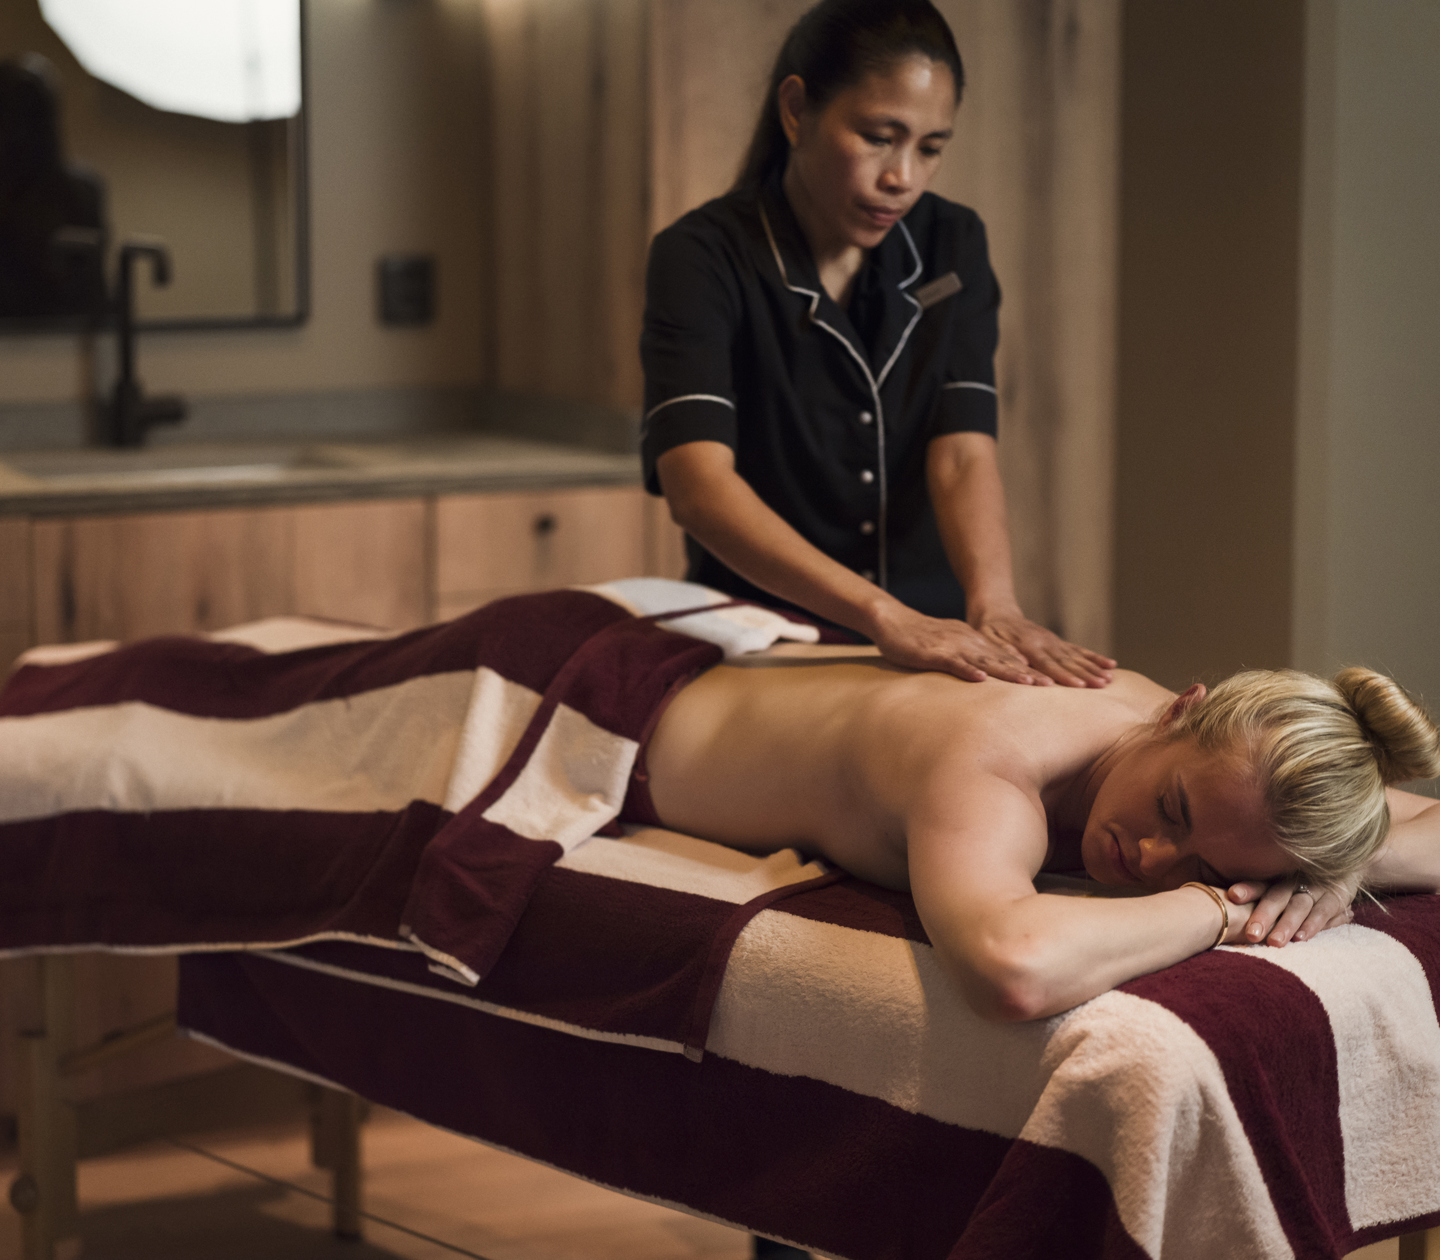 Kvinna som får massage